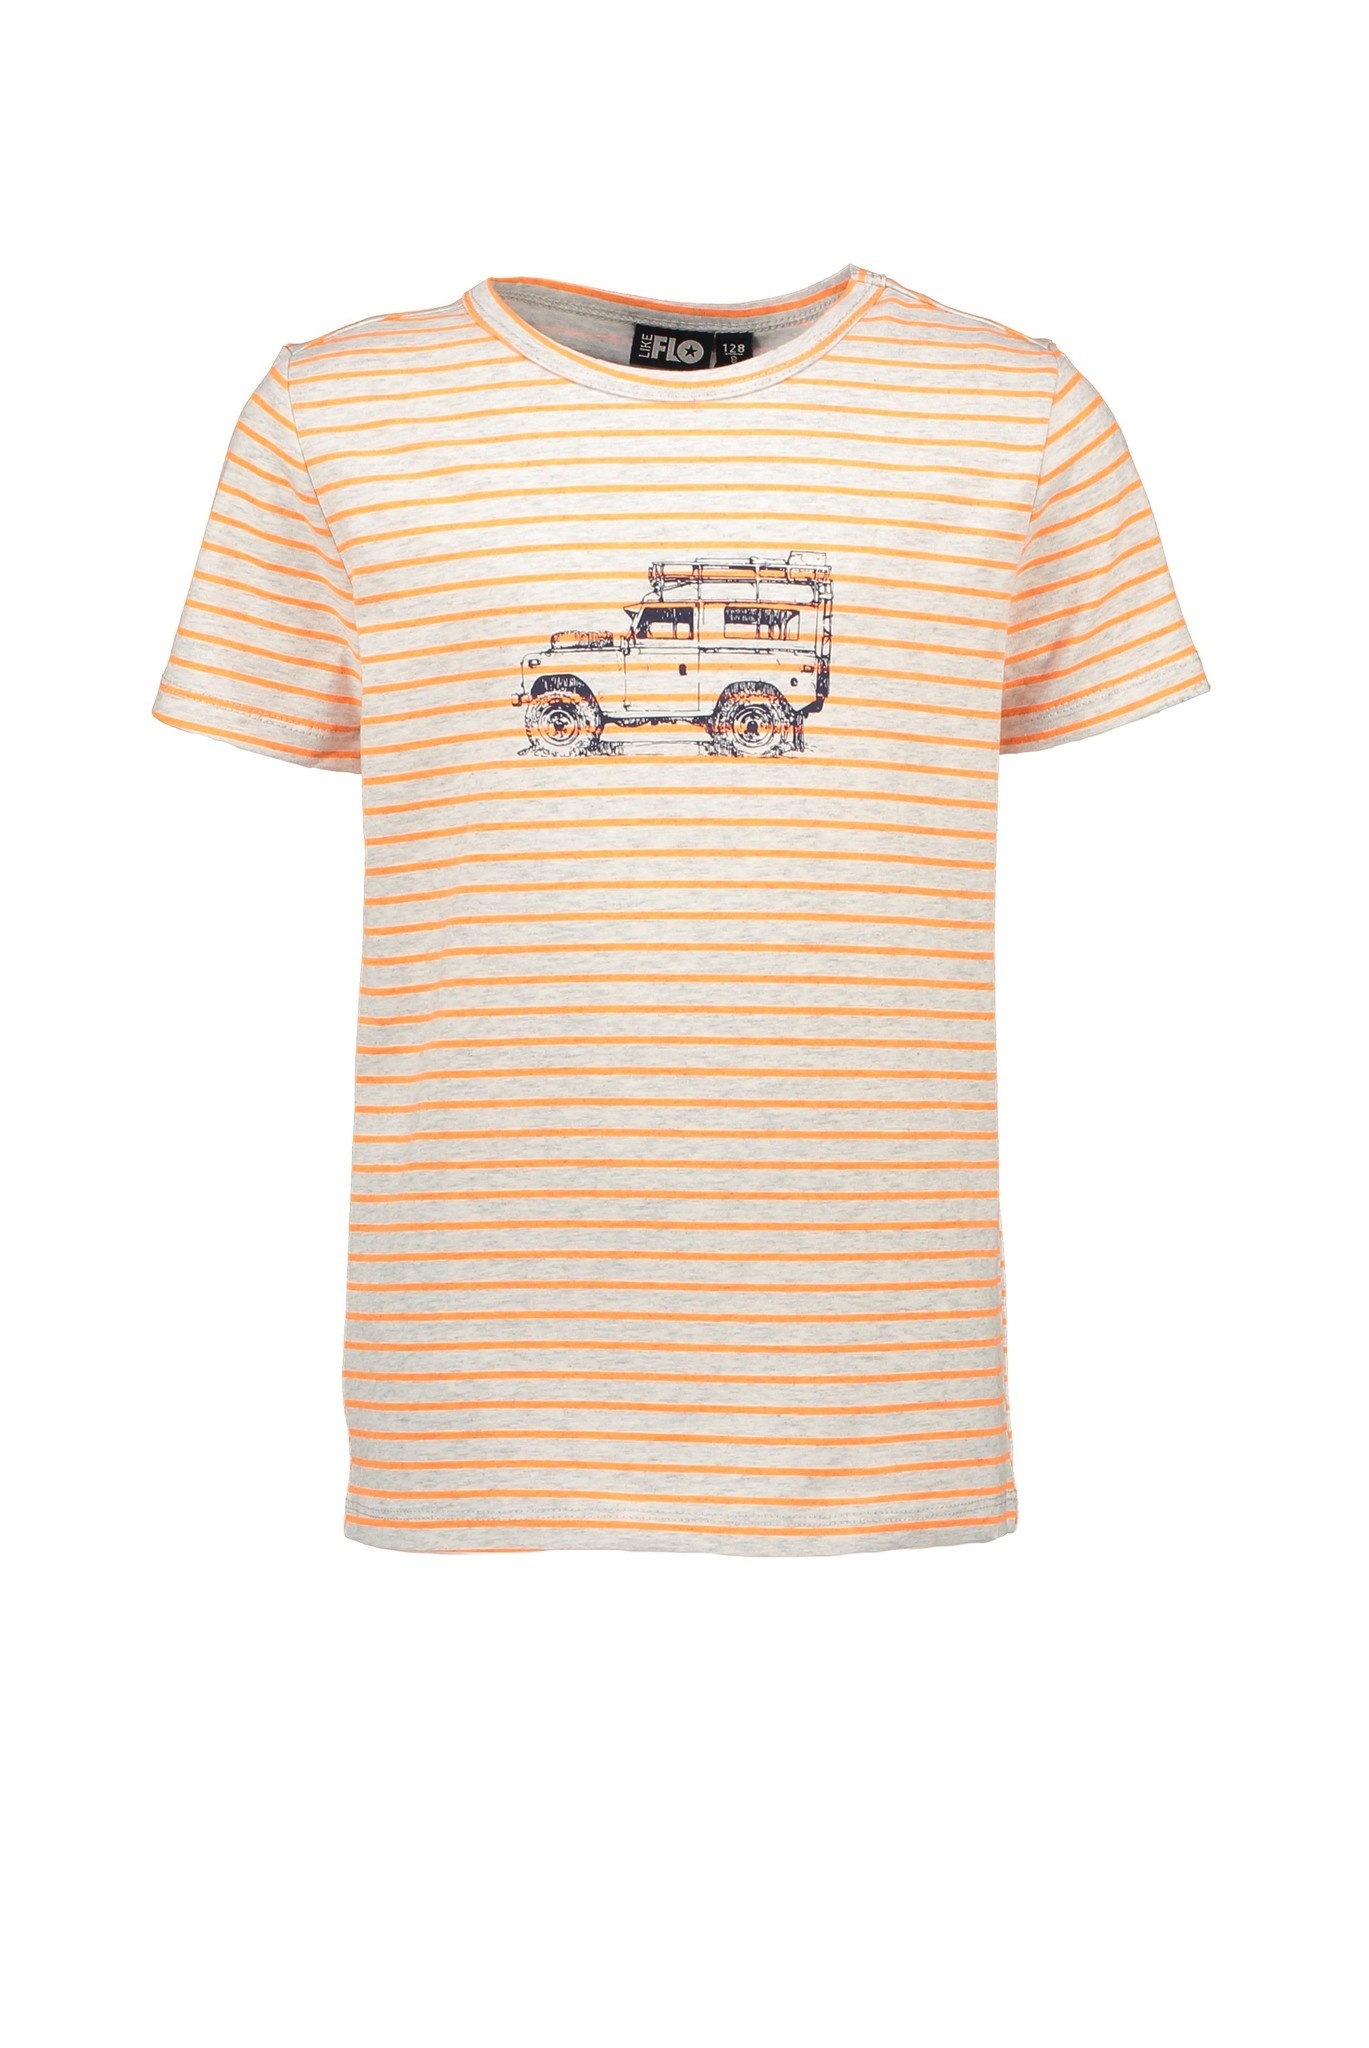 Like Flo Jongens t-shirt jersey - Neon stripe